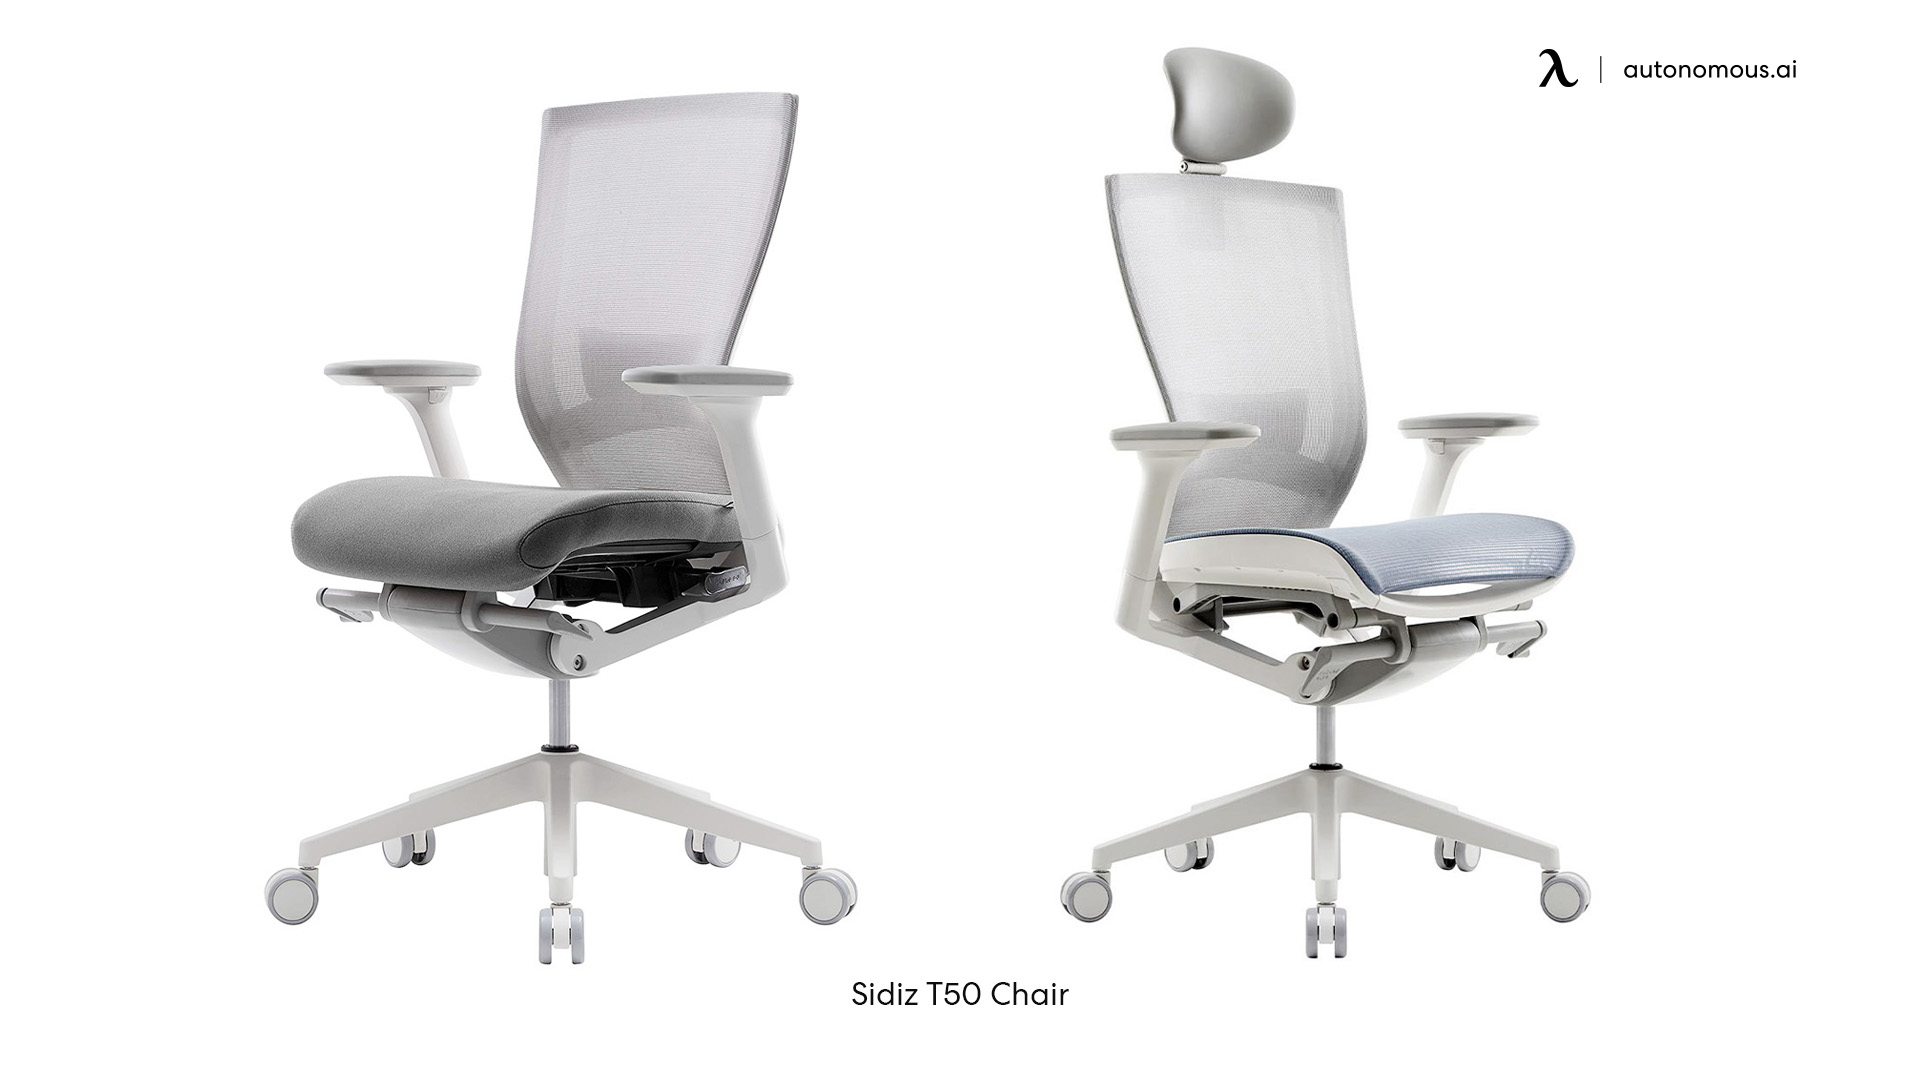 SIDIZ T50 office chair with headrest